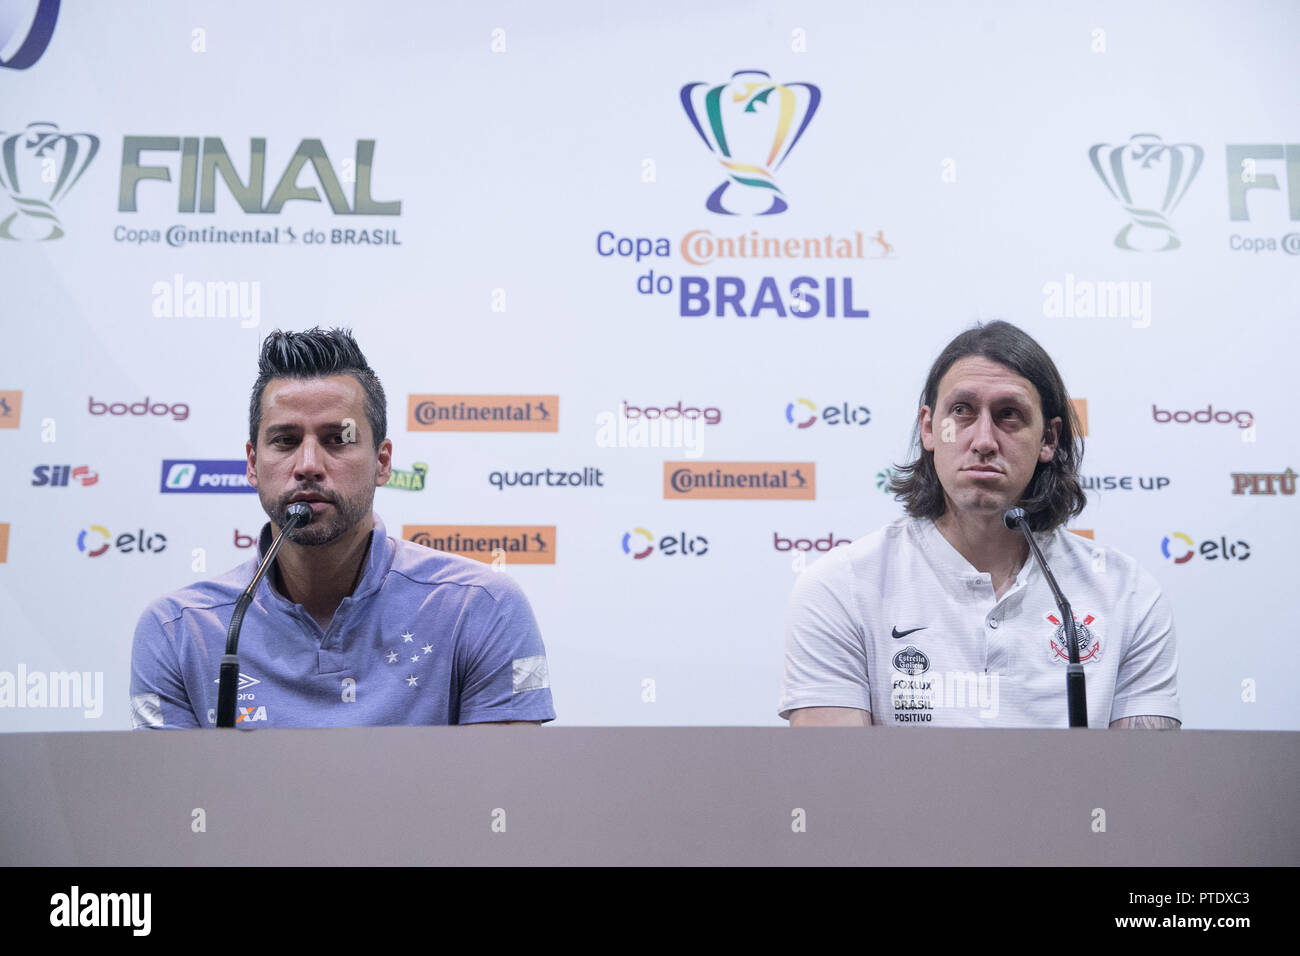 MG - Belo Horizonte - 09/10/2018 - Collettivo, Brasile Cup Final - Portieri fabio e cassio dare una conferenza stampa prima della finale foto: Pedro Vale / AGIF Foto Stock